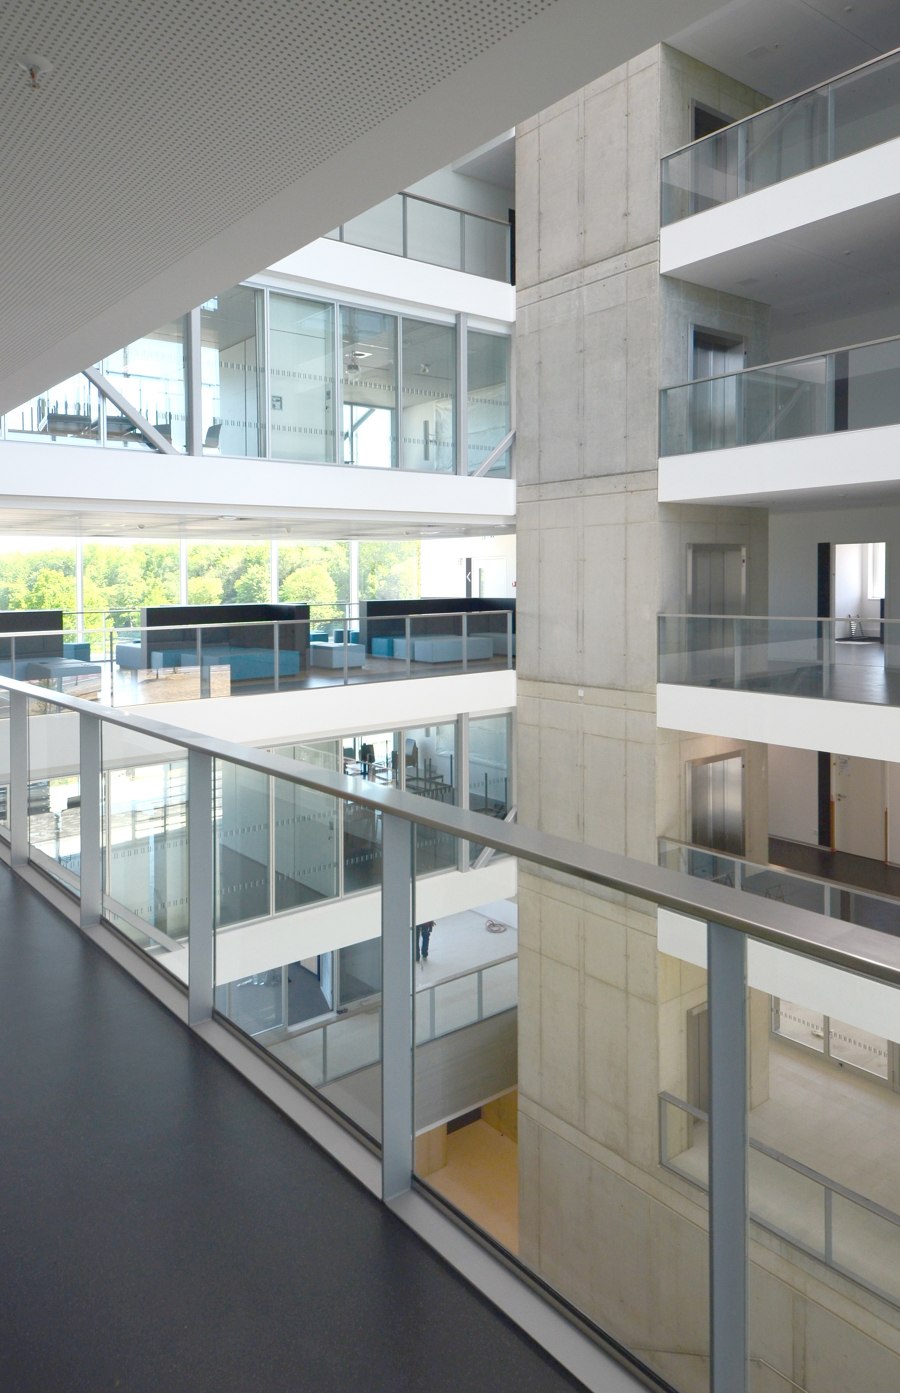 CT² Center for Teaching and Training, RWTH Aachen de slapa oberholz pszczulny | sop architekten | Edificio de Oficinas